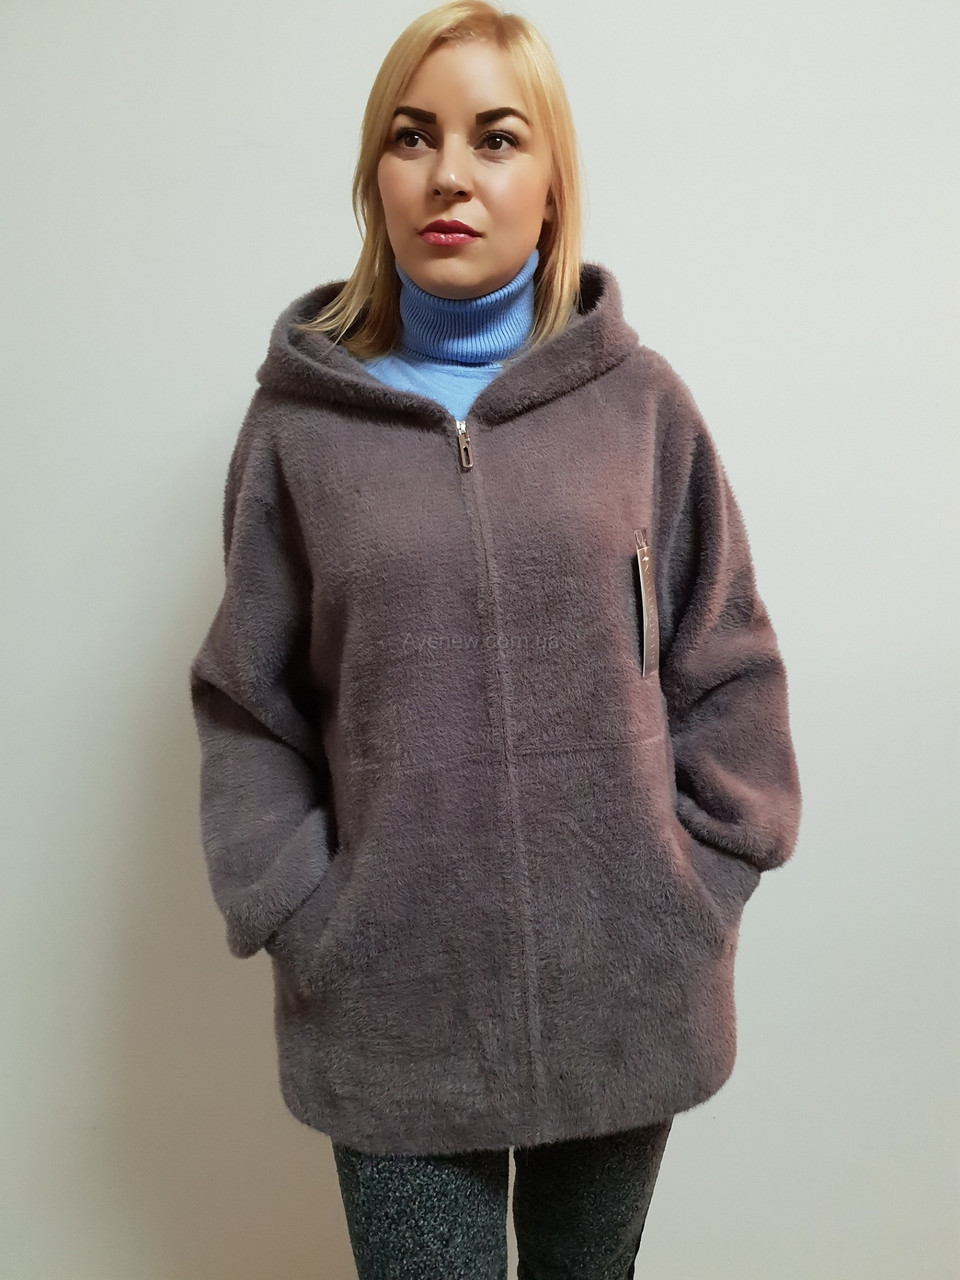 Жіноче пальто з капюшоном із вовни альпака 56-60